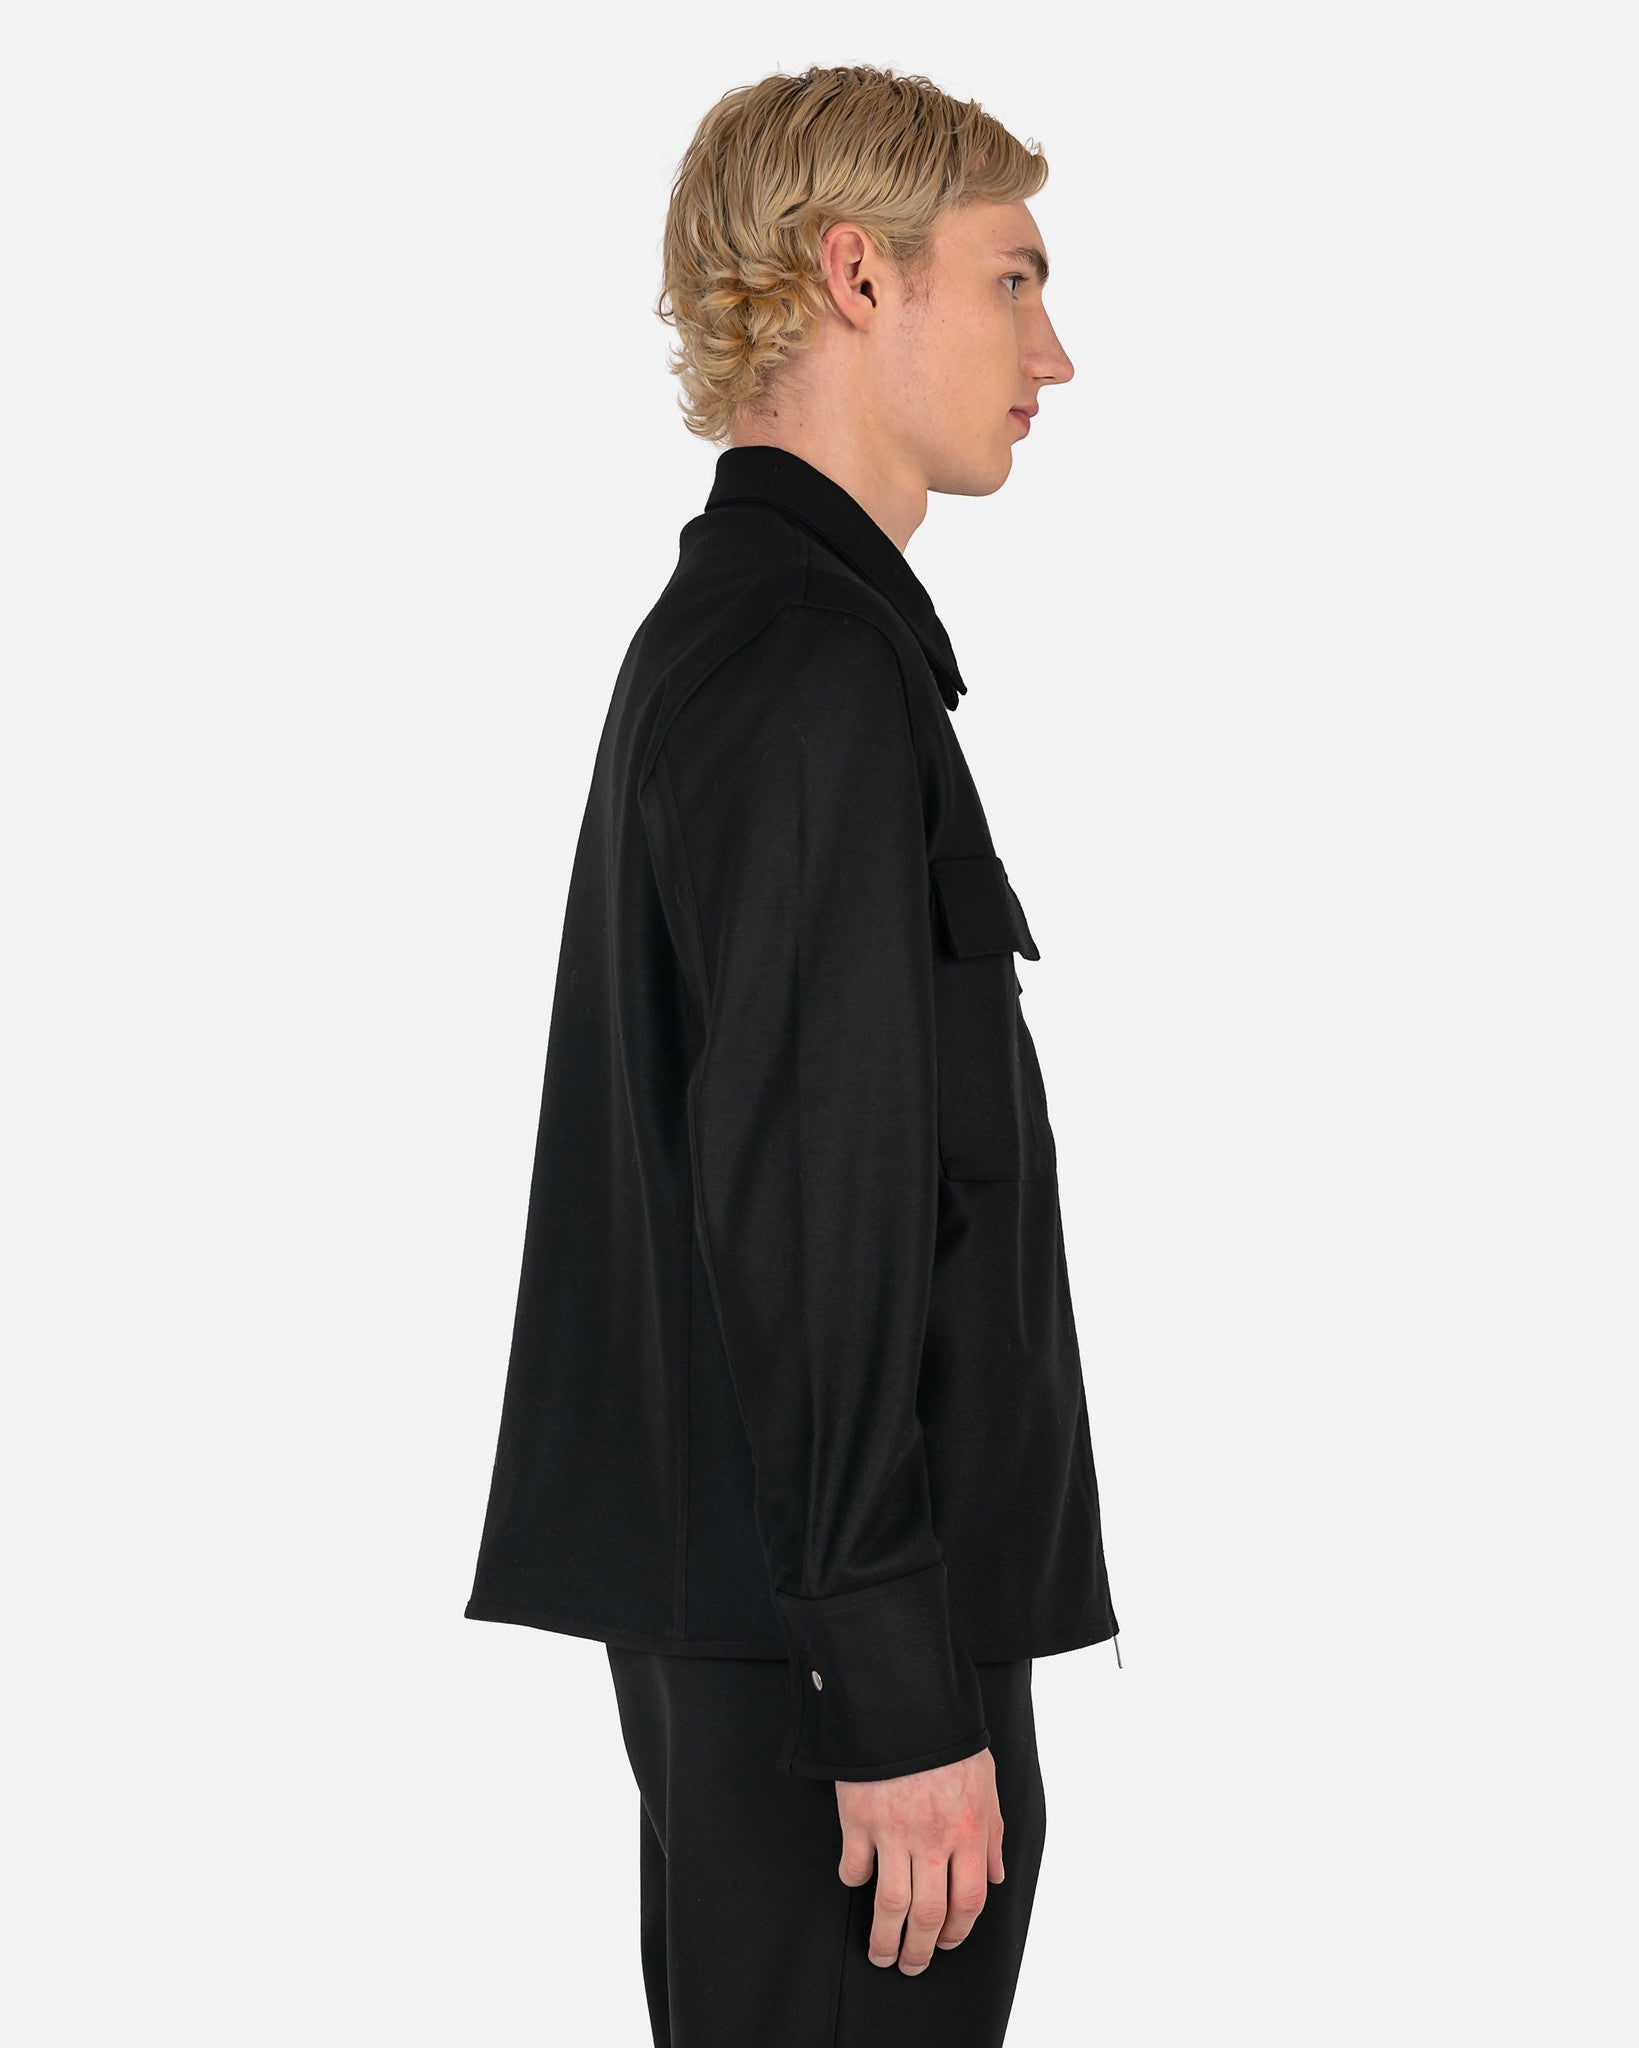 Jil Sander Men's Shirts Wool Melton Shirt in Black